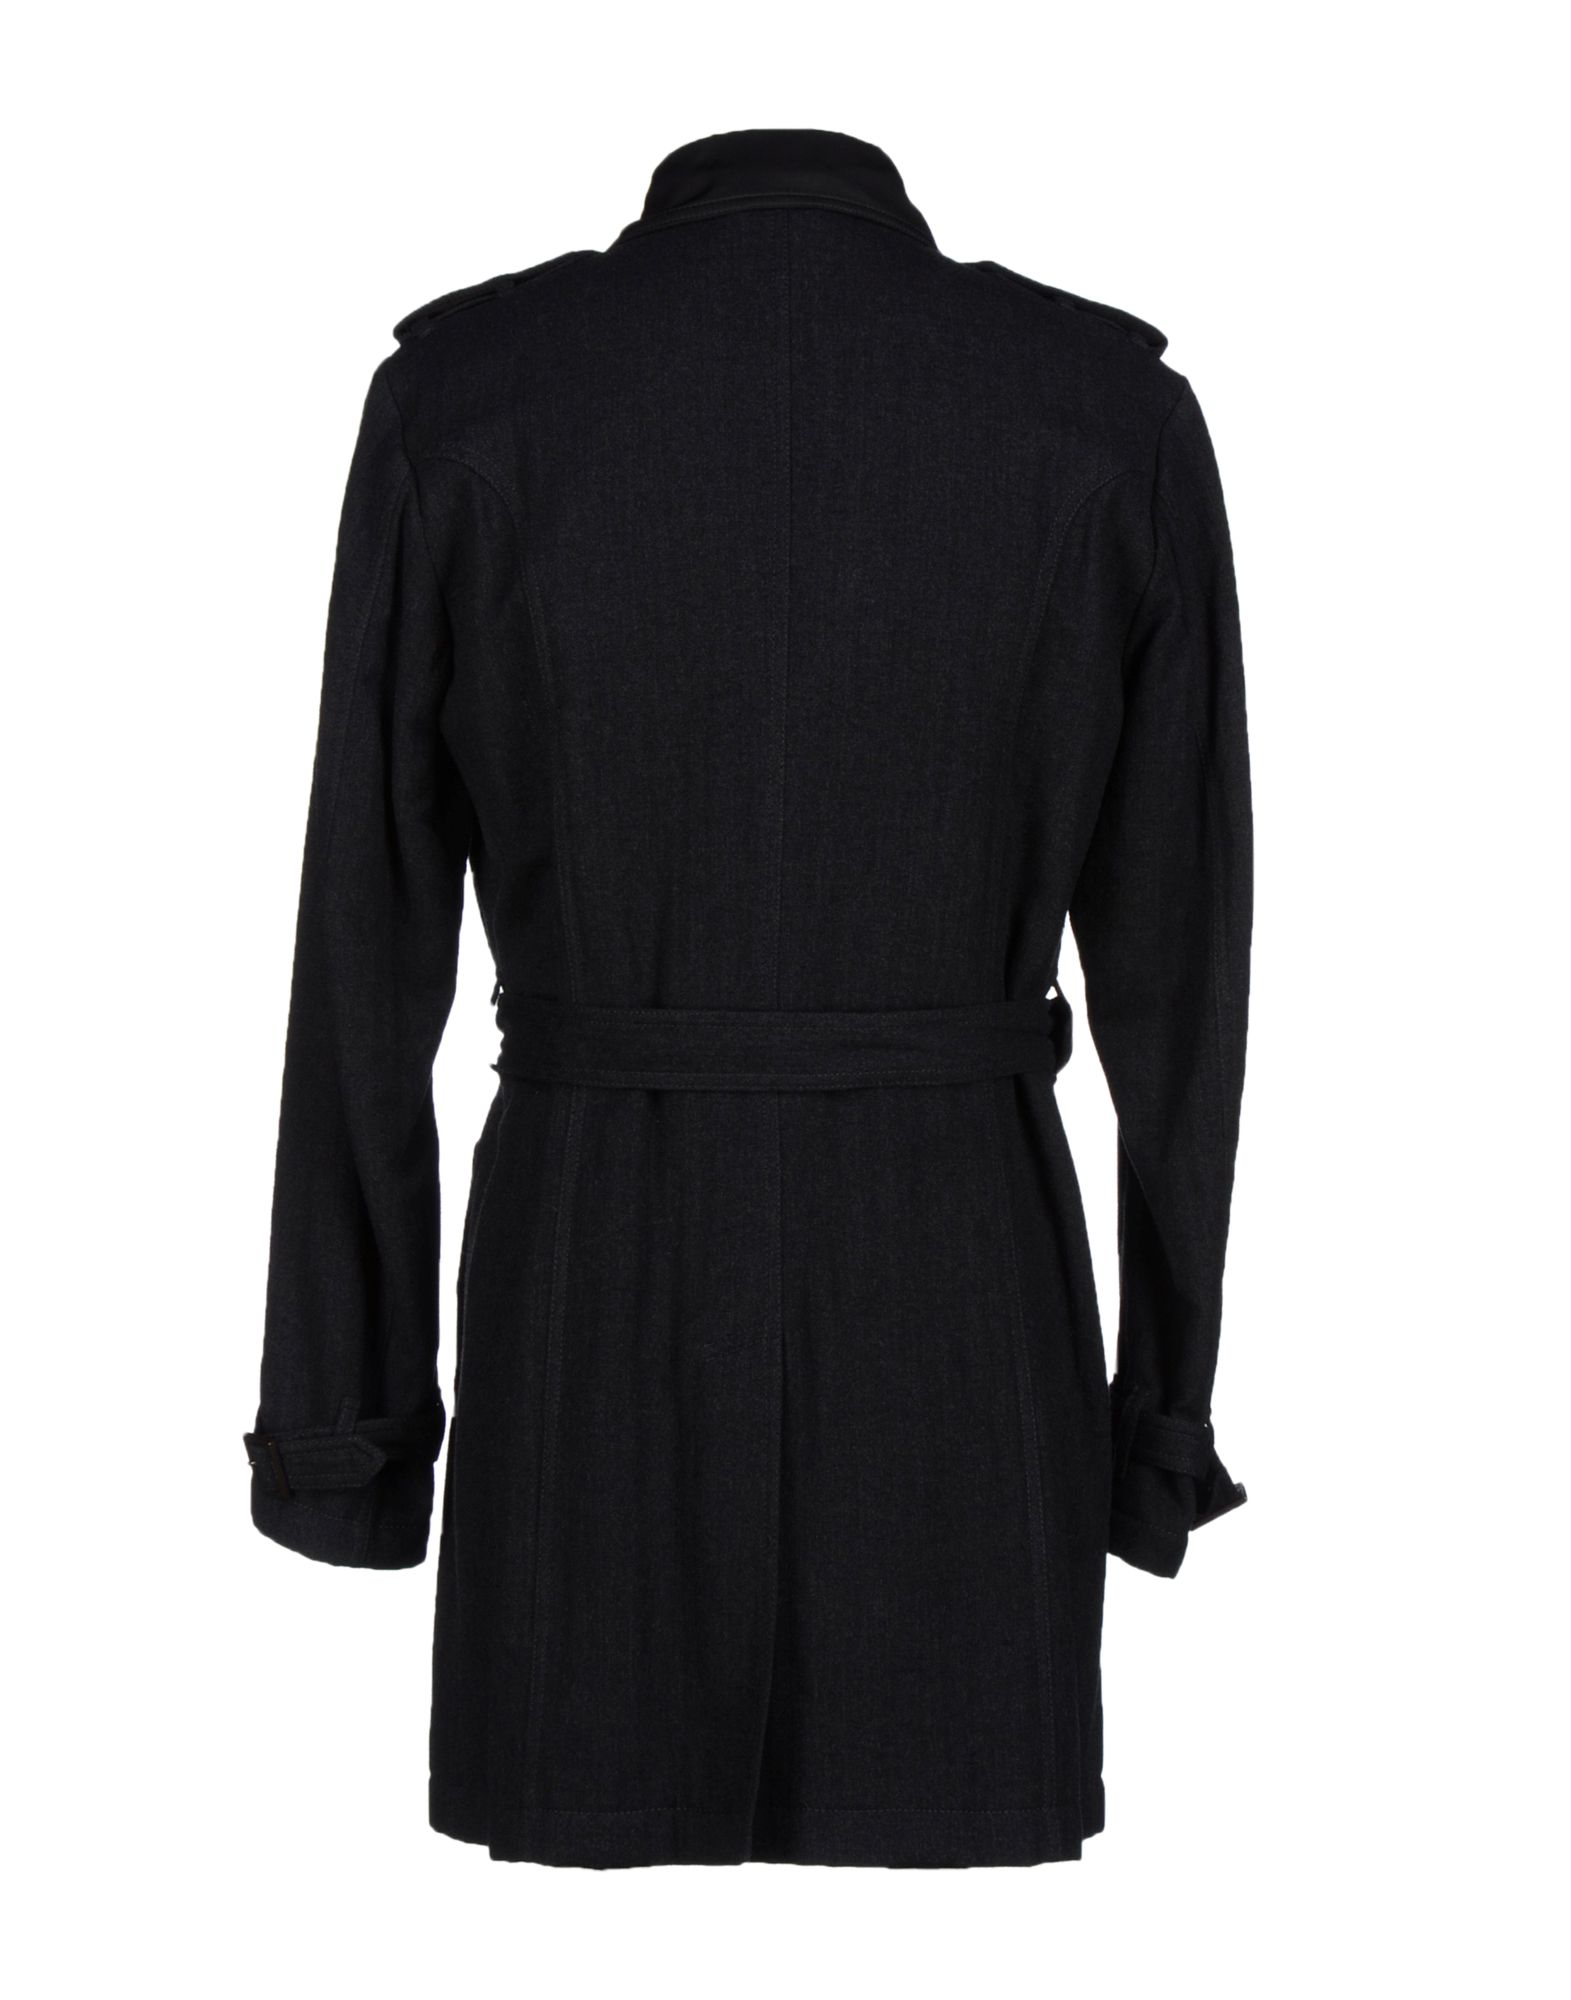 Lyst - Class Roberto Cavalli Coat in Black for Men